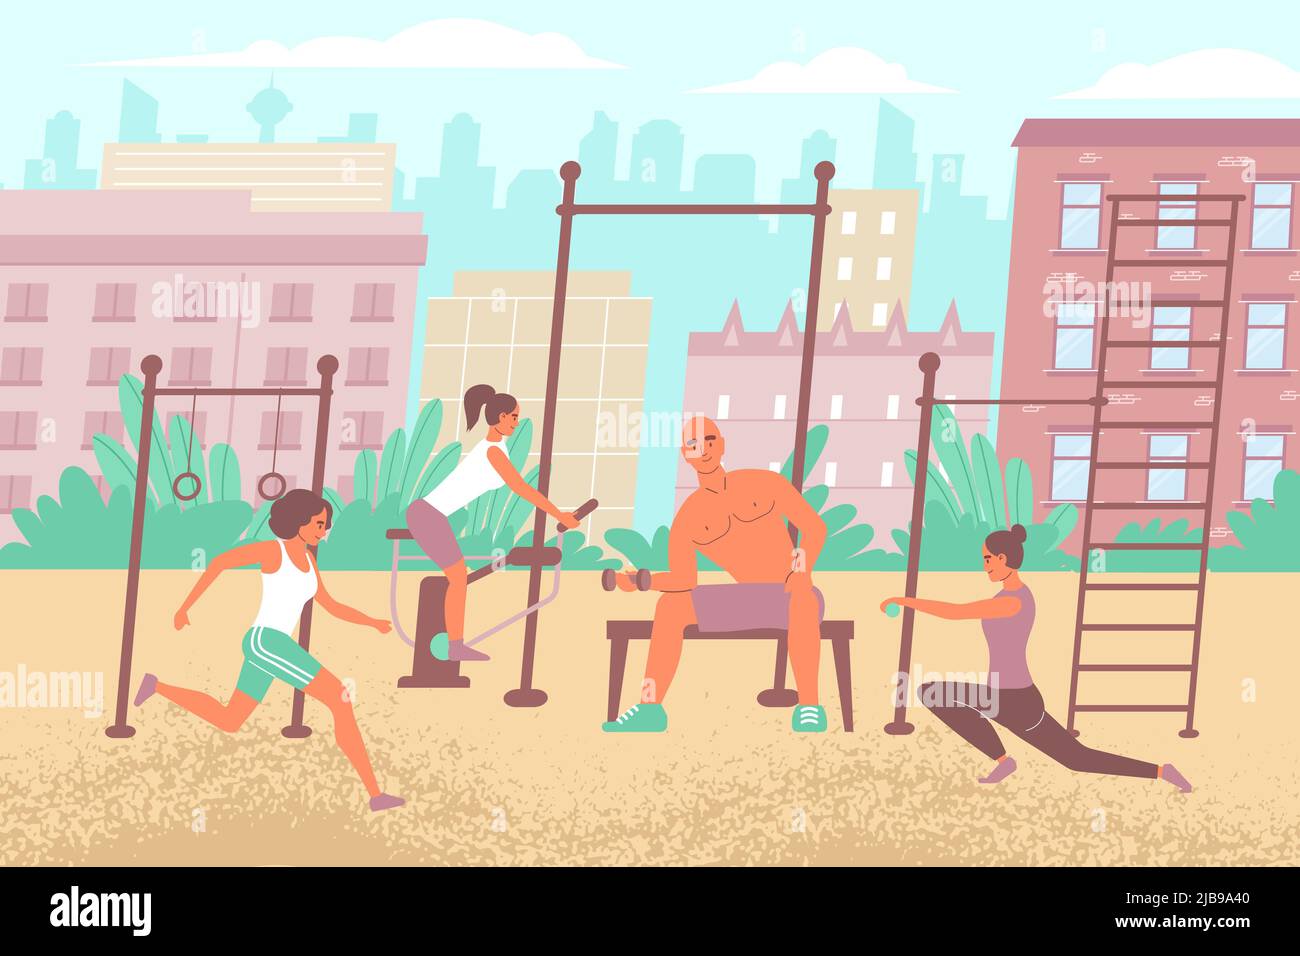 Composition de terrain de sport urbain avec paysage urbain plat extérieur et équipement de gym avec des personnes effectuant des exercices d'entraînement illustration vectorielle Illustration de Vecteur